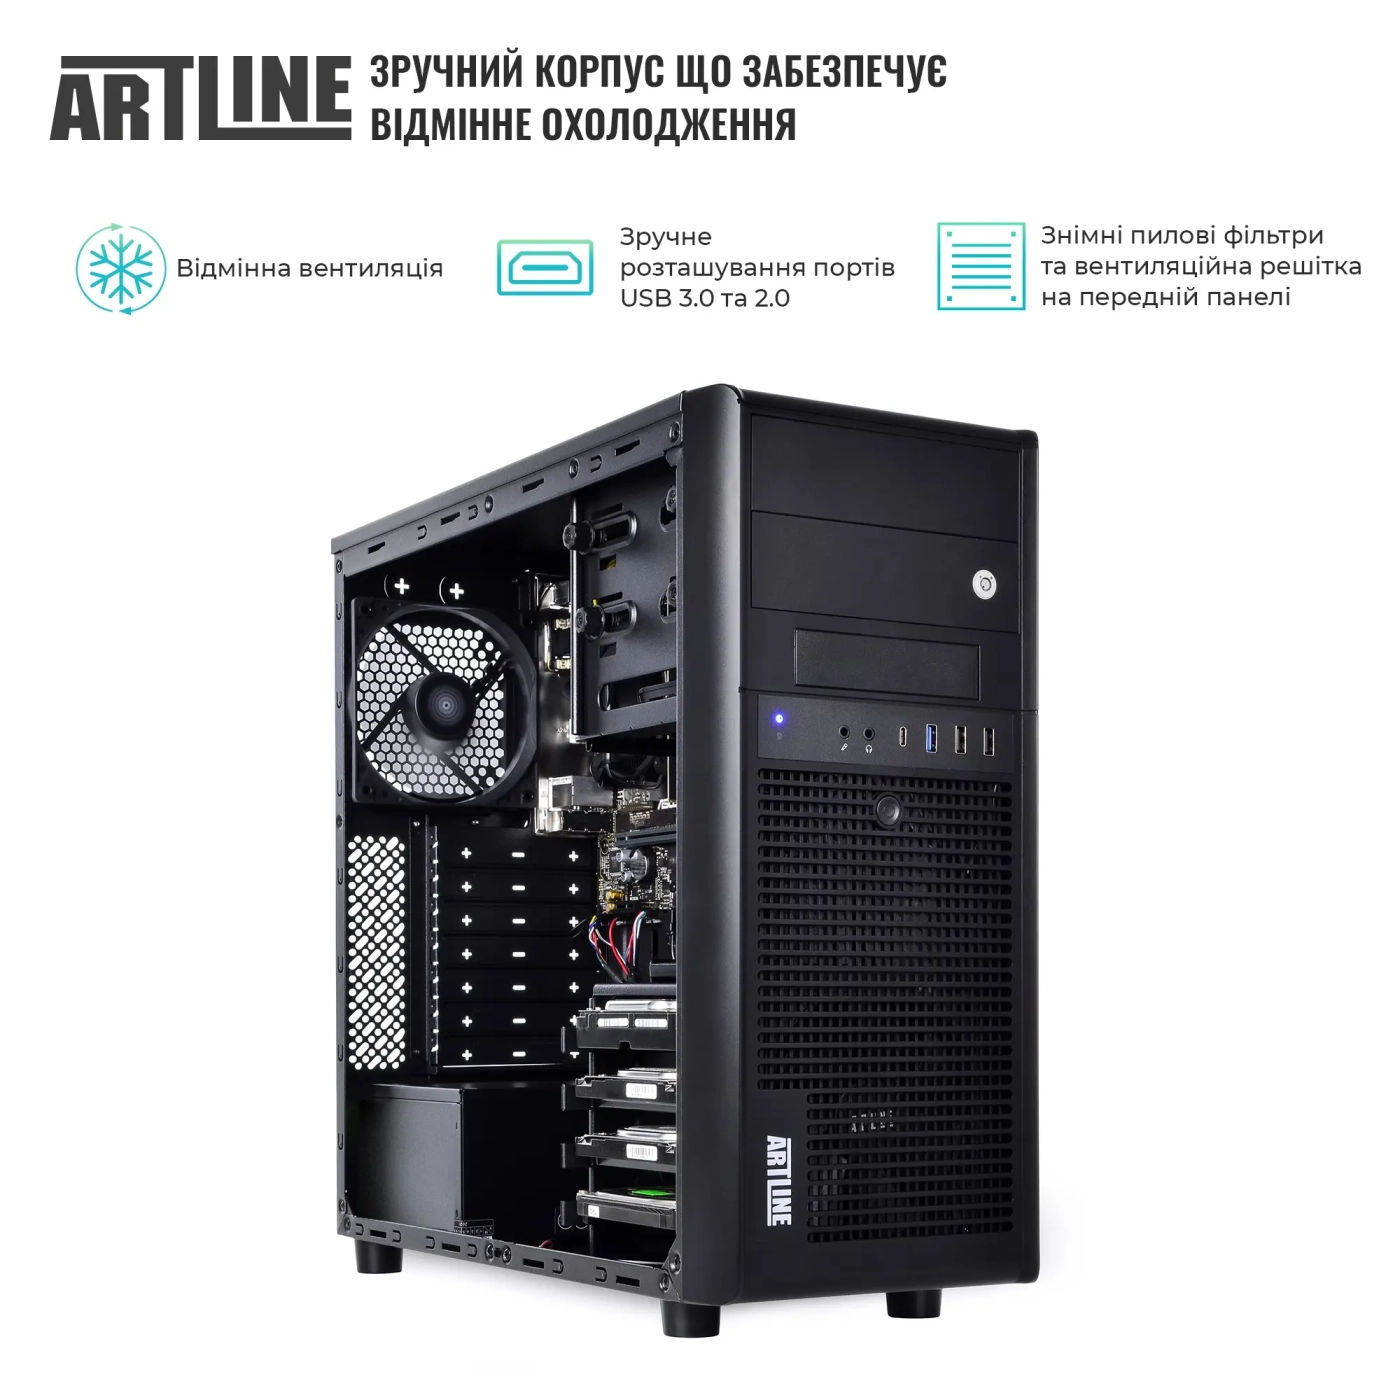 Купить Сервер ARTLINE Business T34 (T34v29) - фото 3